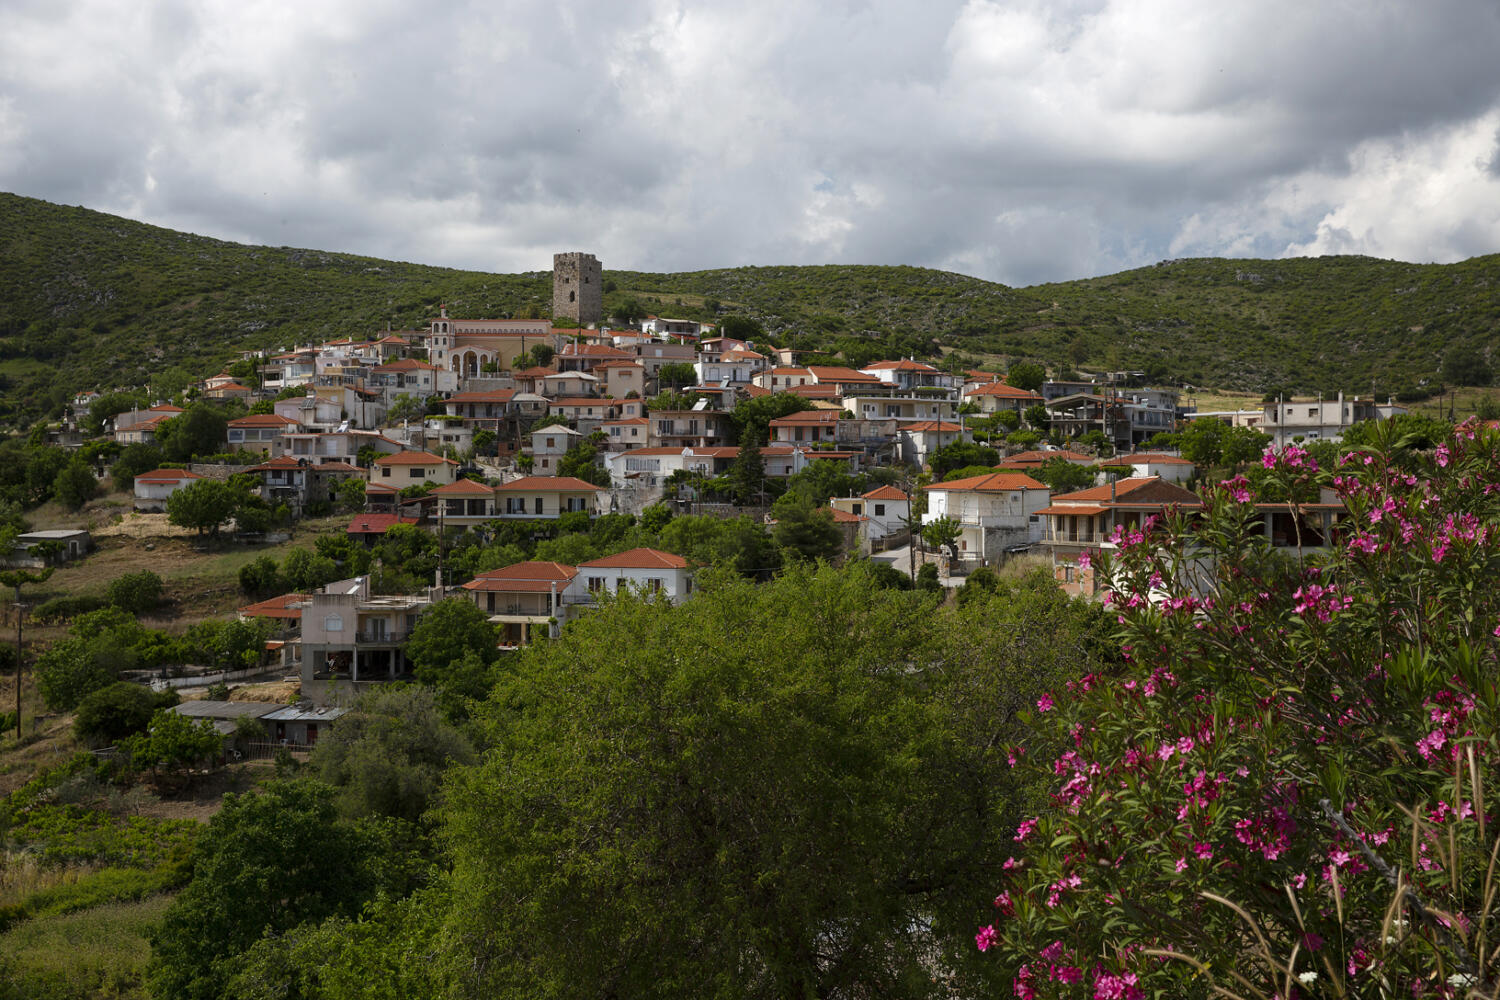 Χωριό Τραχήλι. Φωτογραφία: ©Βασίλης Συκάς, για τον Δήμο Κύμης-Αλιβερίου